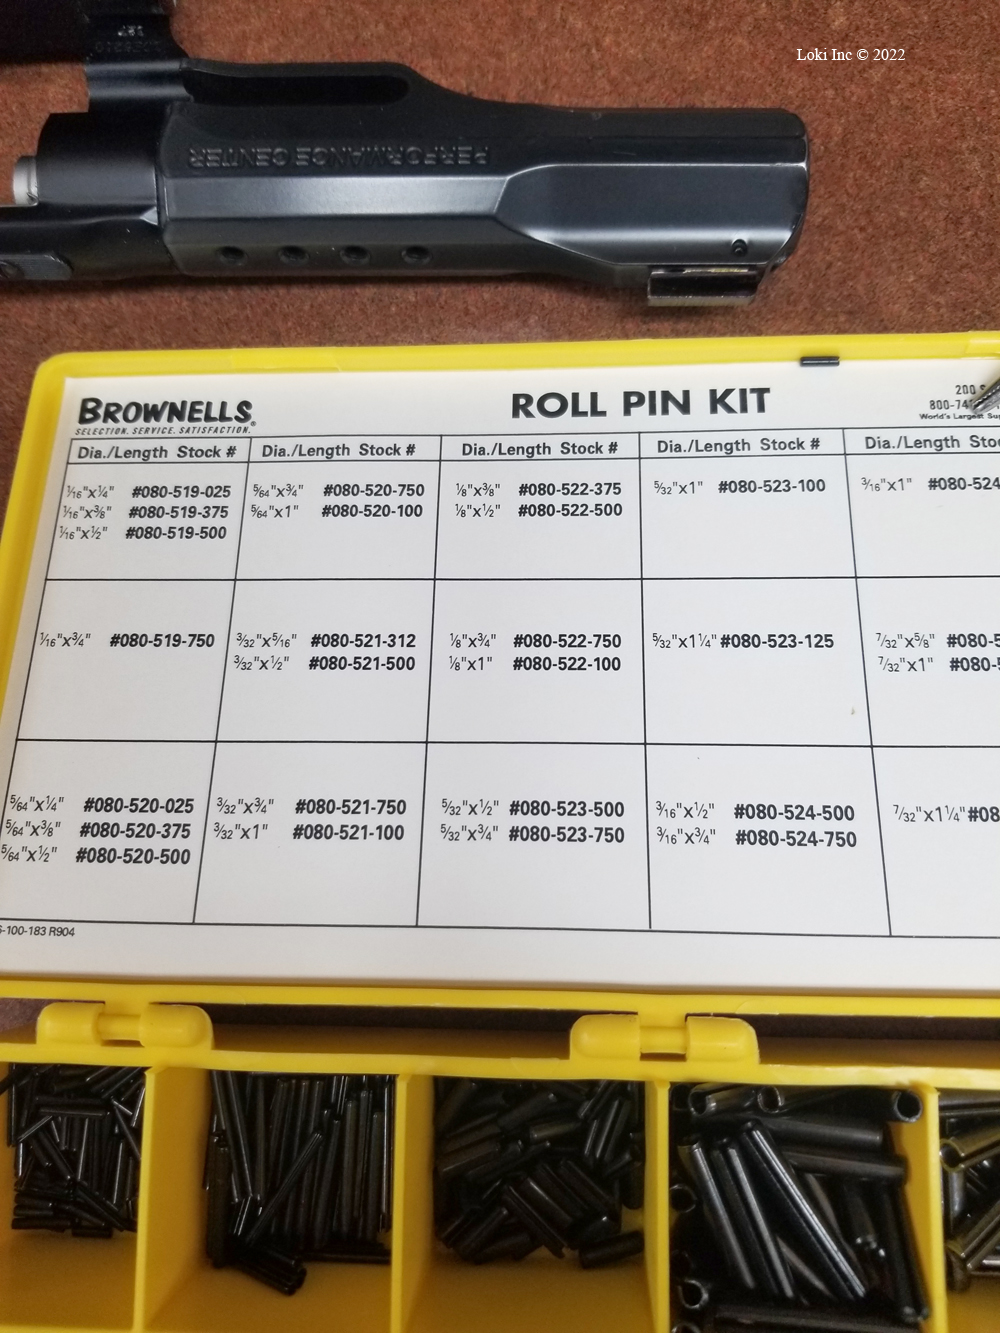 Roll pin kit